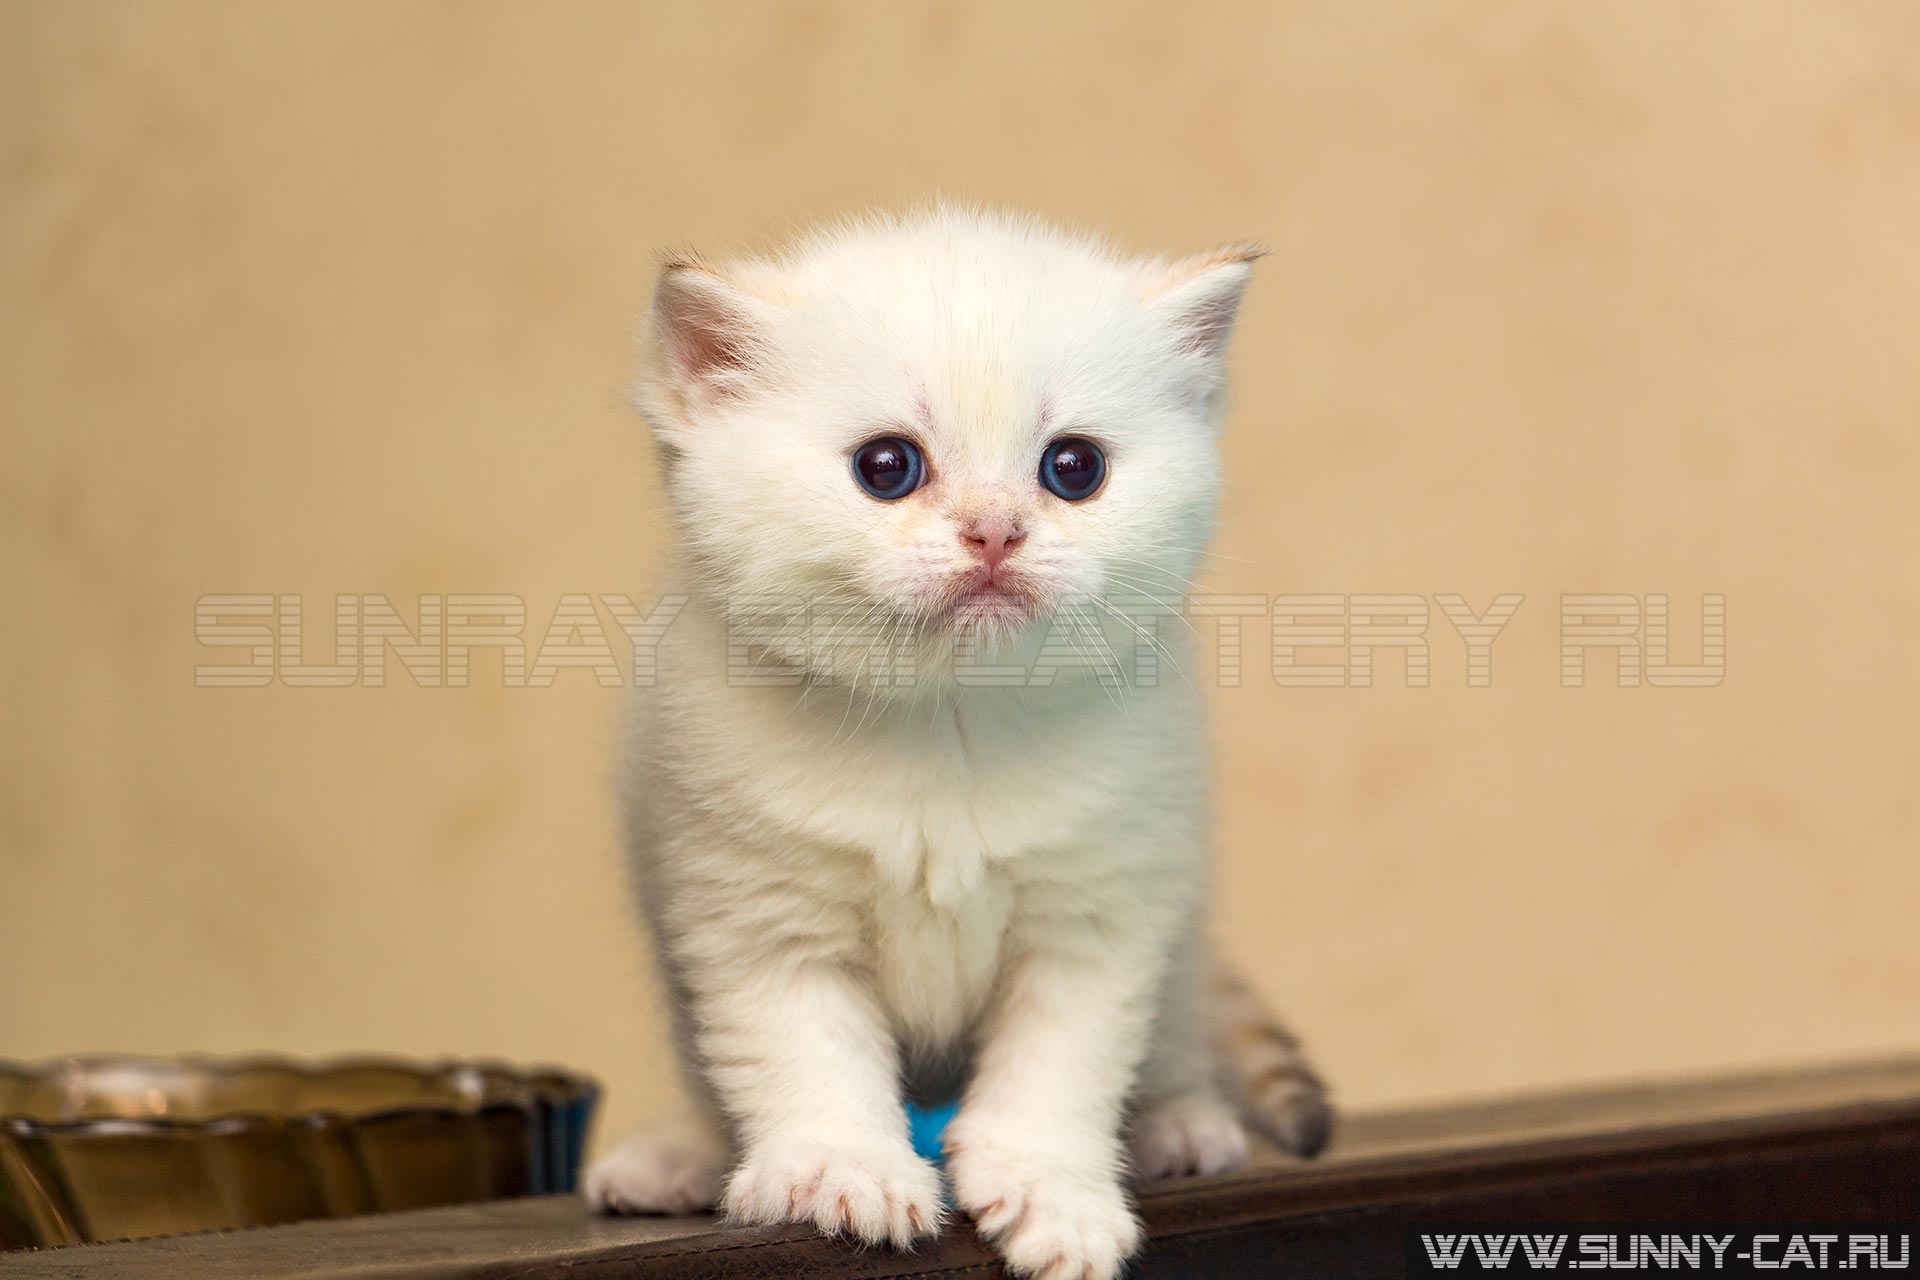 Белый котенок британской породы с голубыми глазами стоит на спинке дивана и смотрит вперед